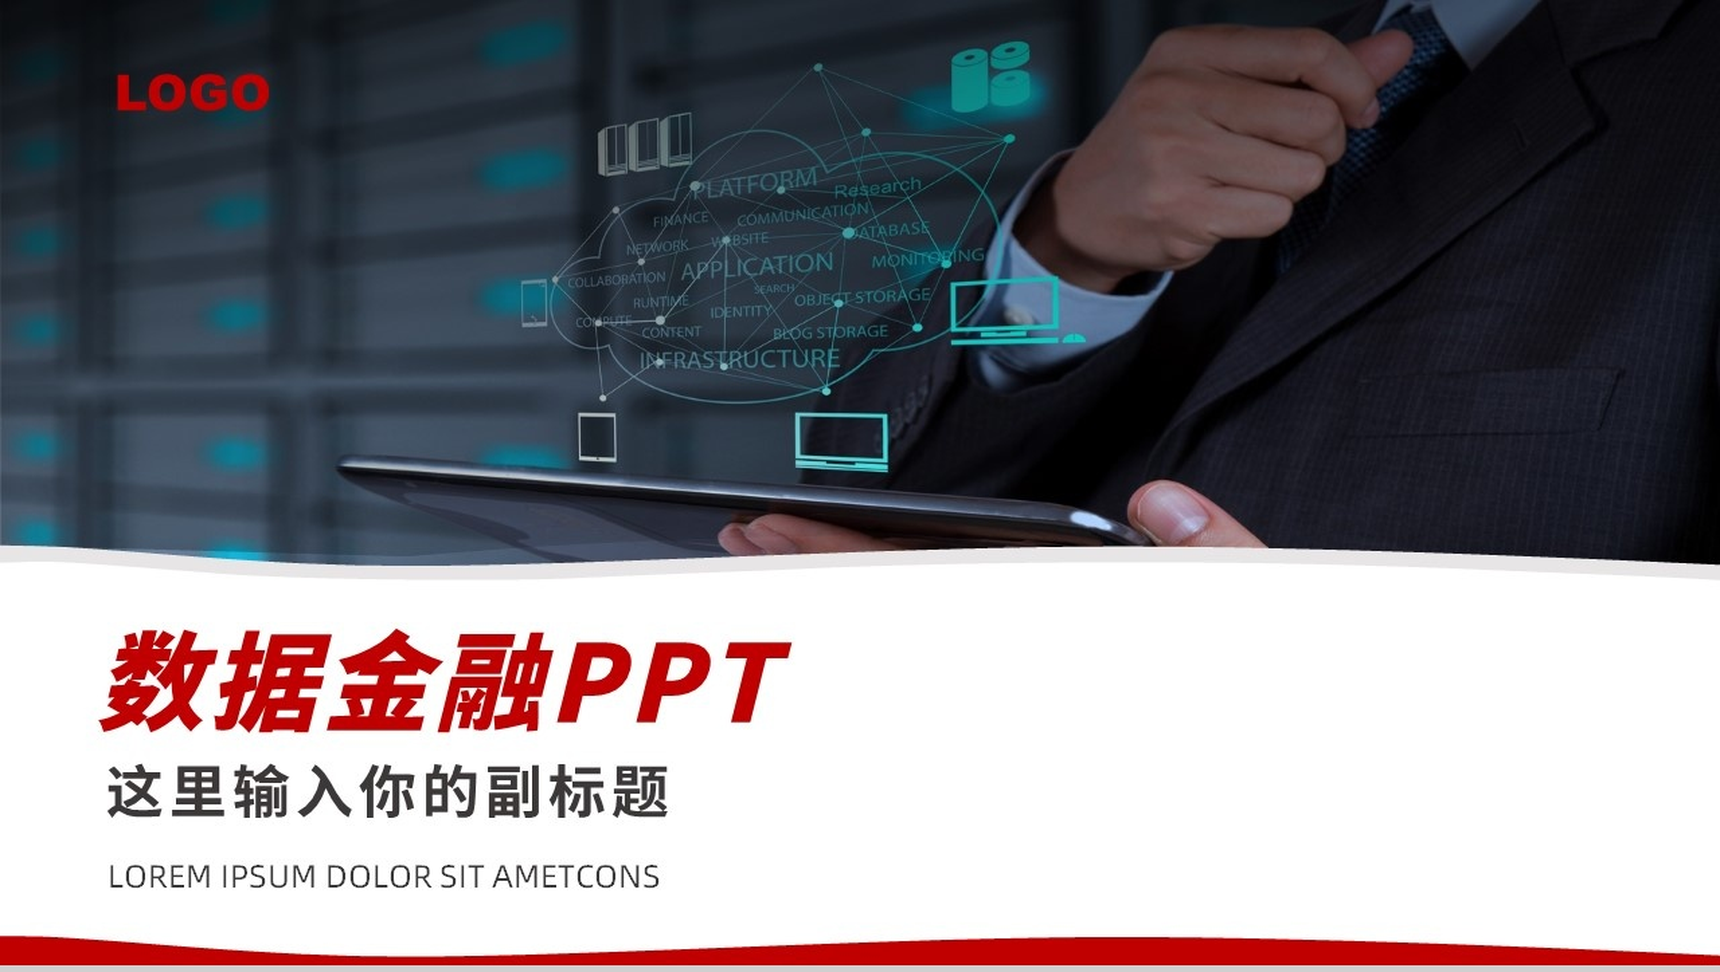 简单的公司介绍开场白文案数据金融管理PPT模板-1